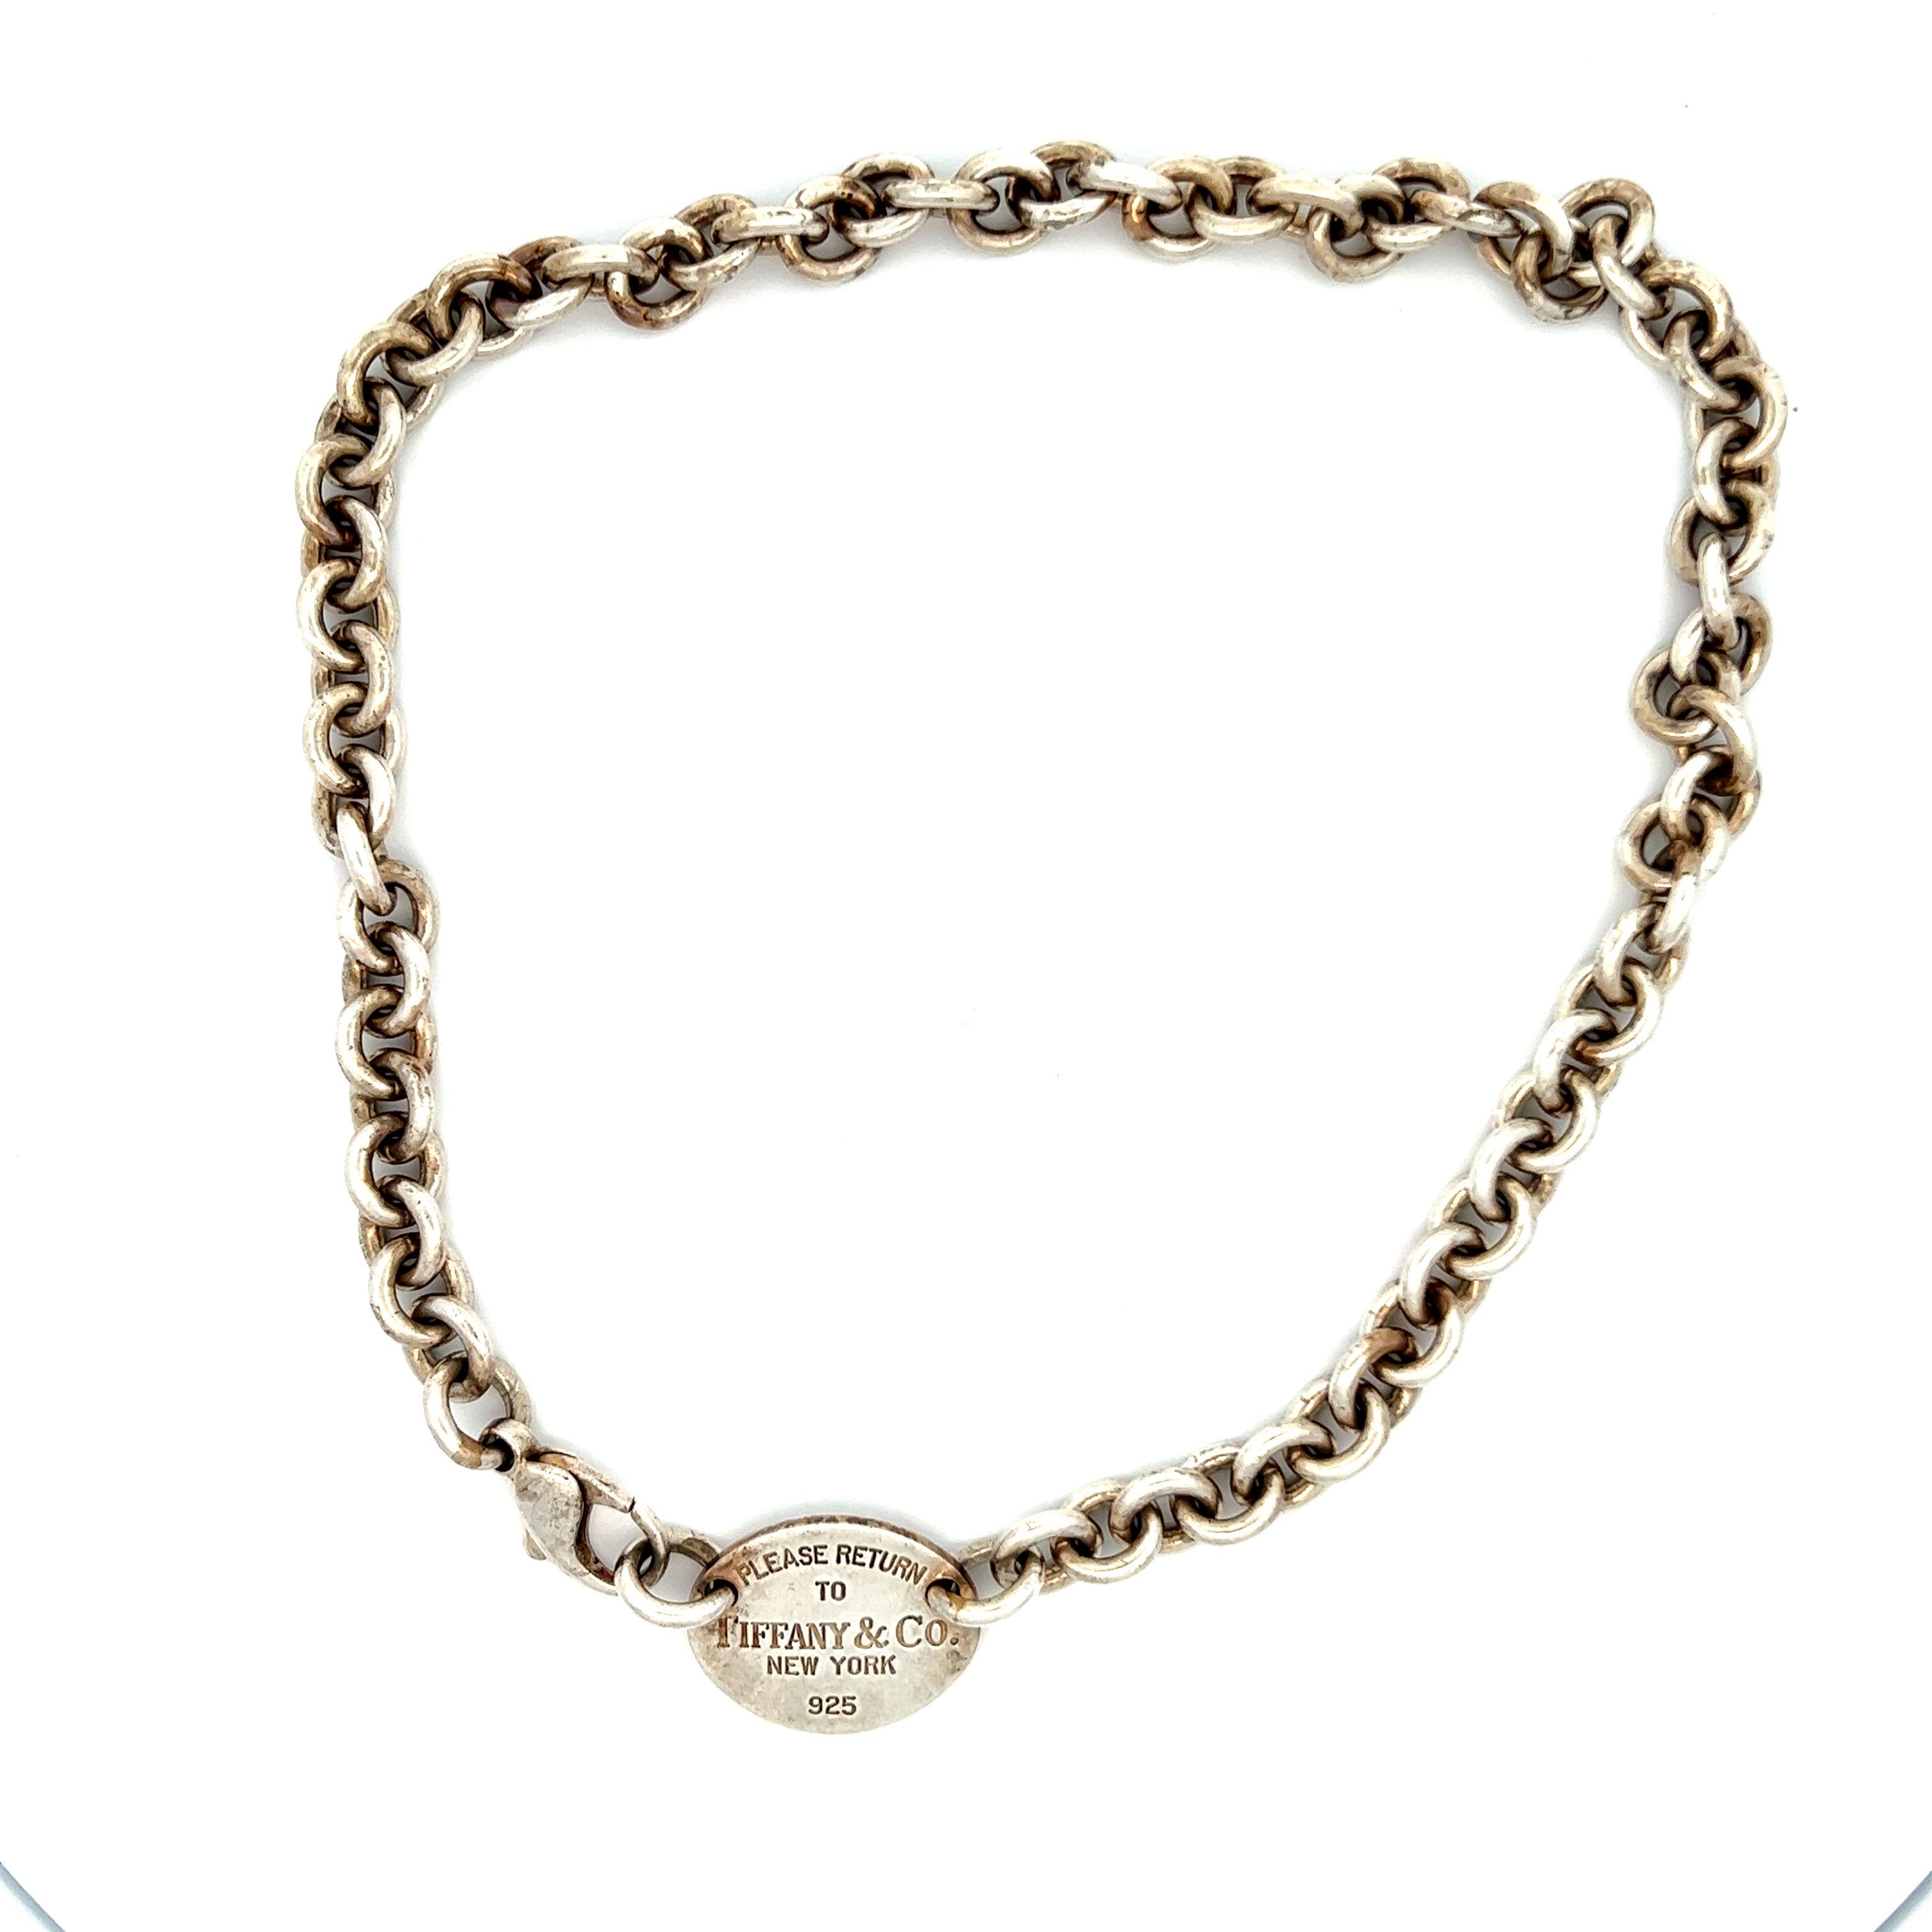 Die Kollektion Return to Tiffany wurde von dem 1969 erstmals vorgestellten Schlüsselanhänger inspiriert und ist ein Klassiker, der neu erfunden wurde. Diese elegante Halskette verkörpert die berühmte Ästhetik der Collection'S. Sie ist ein wahres